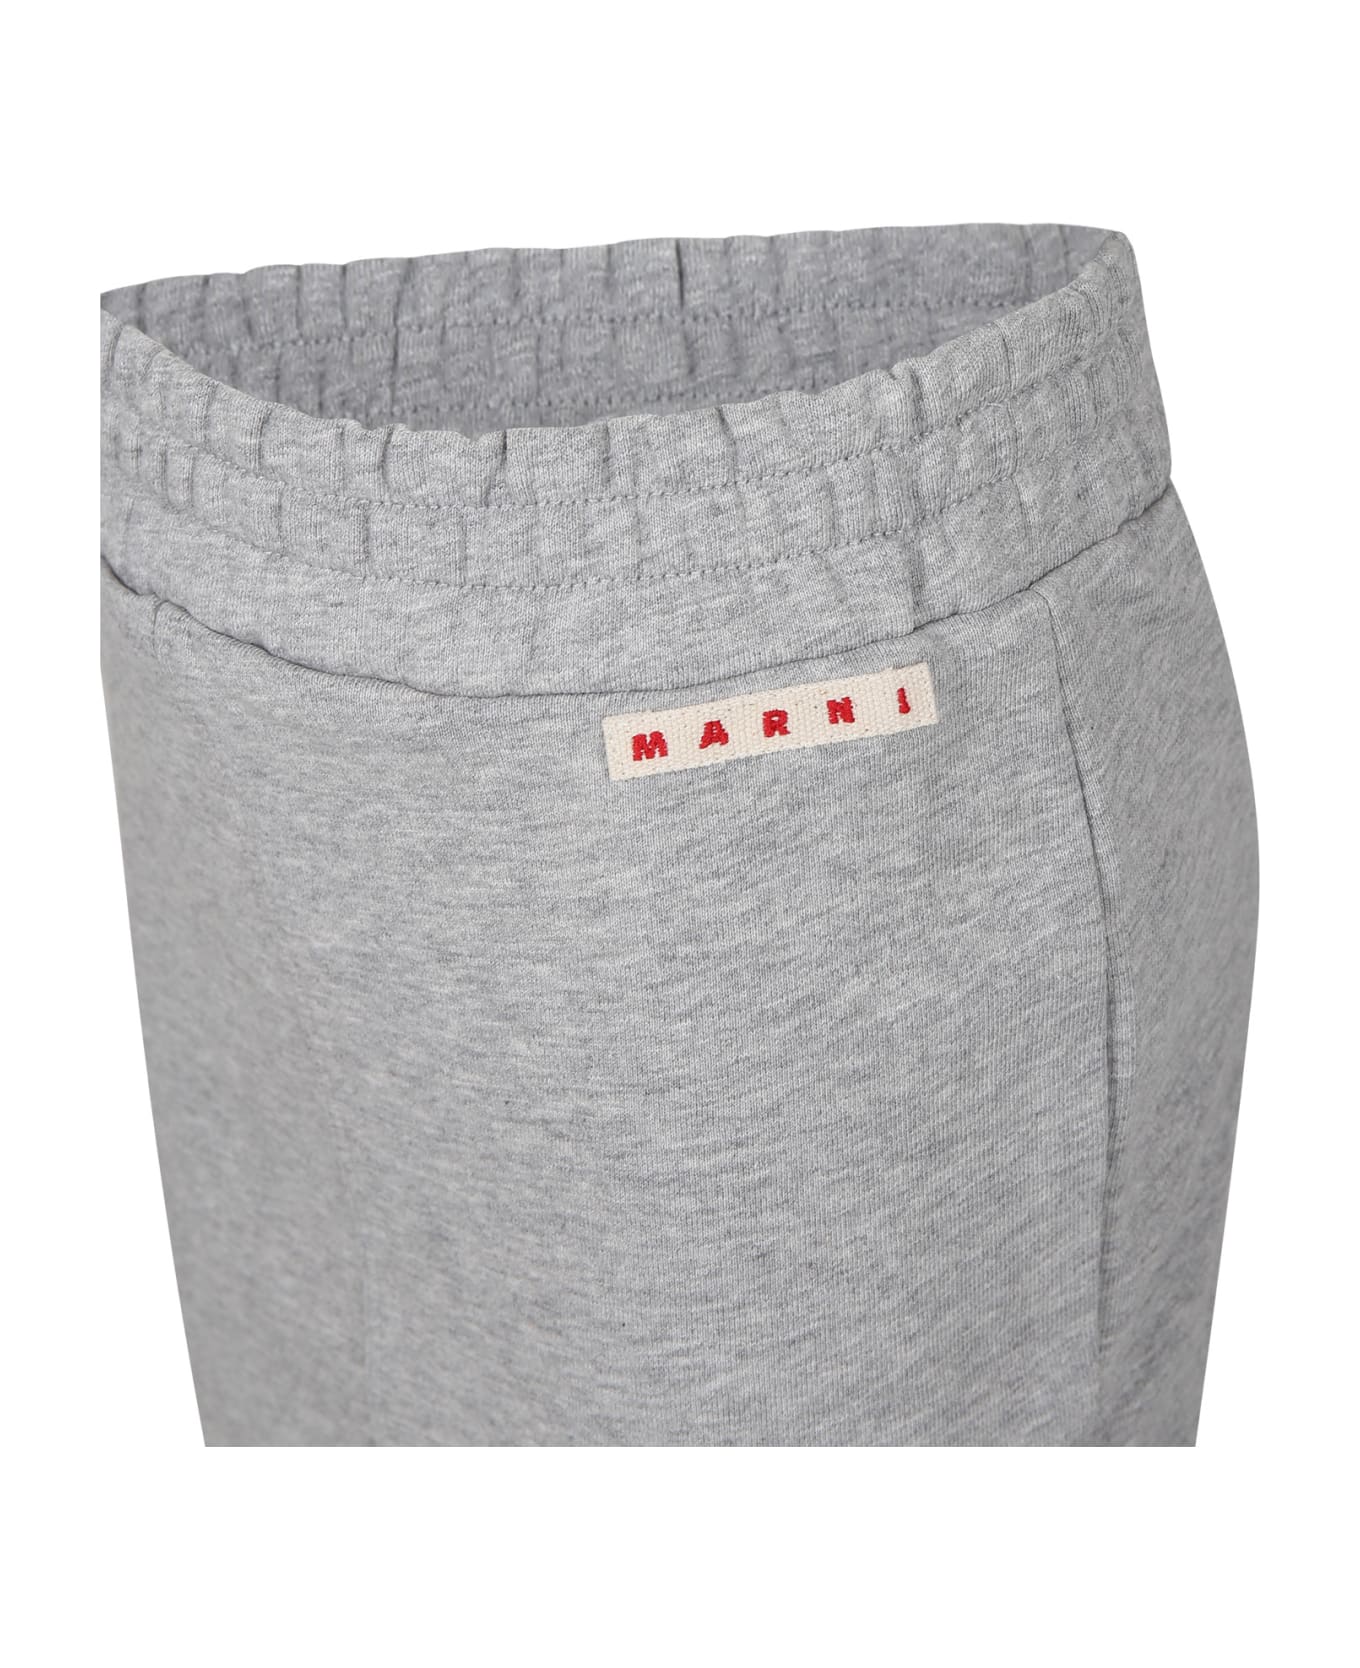 Marni Gray Skirt For Girl With Logo - Grey